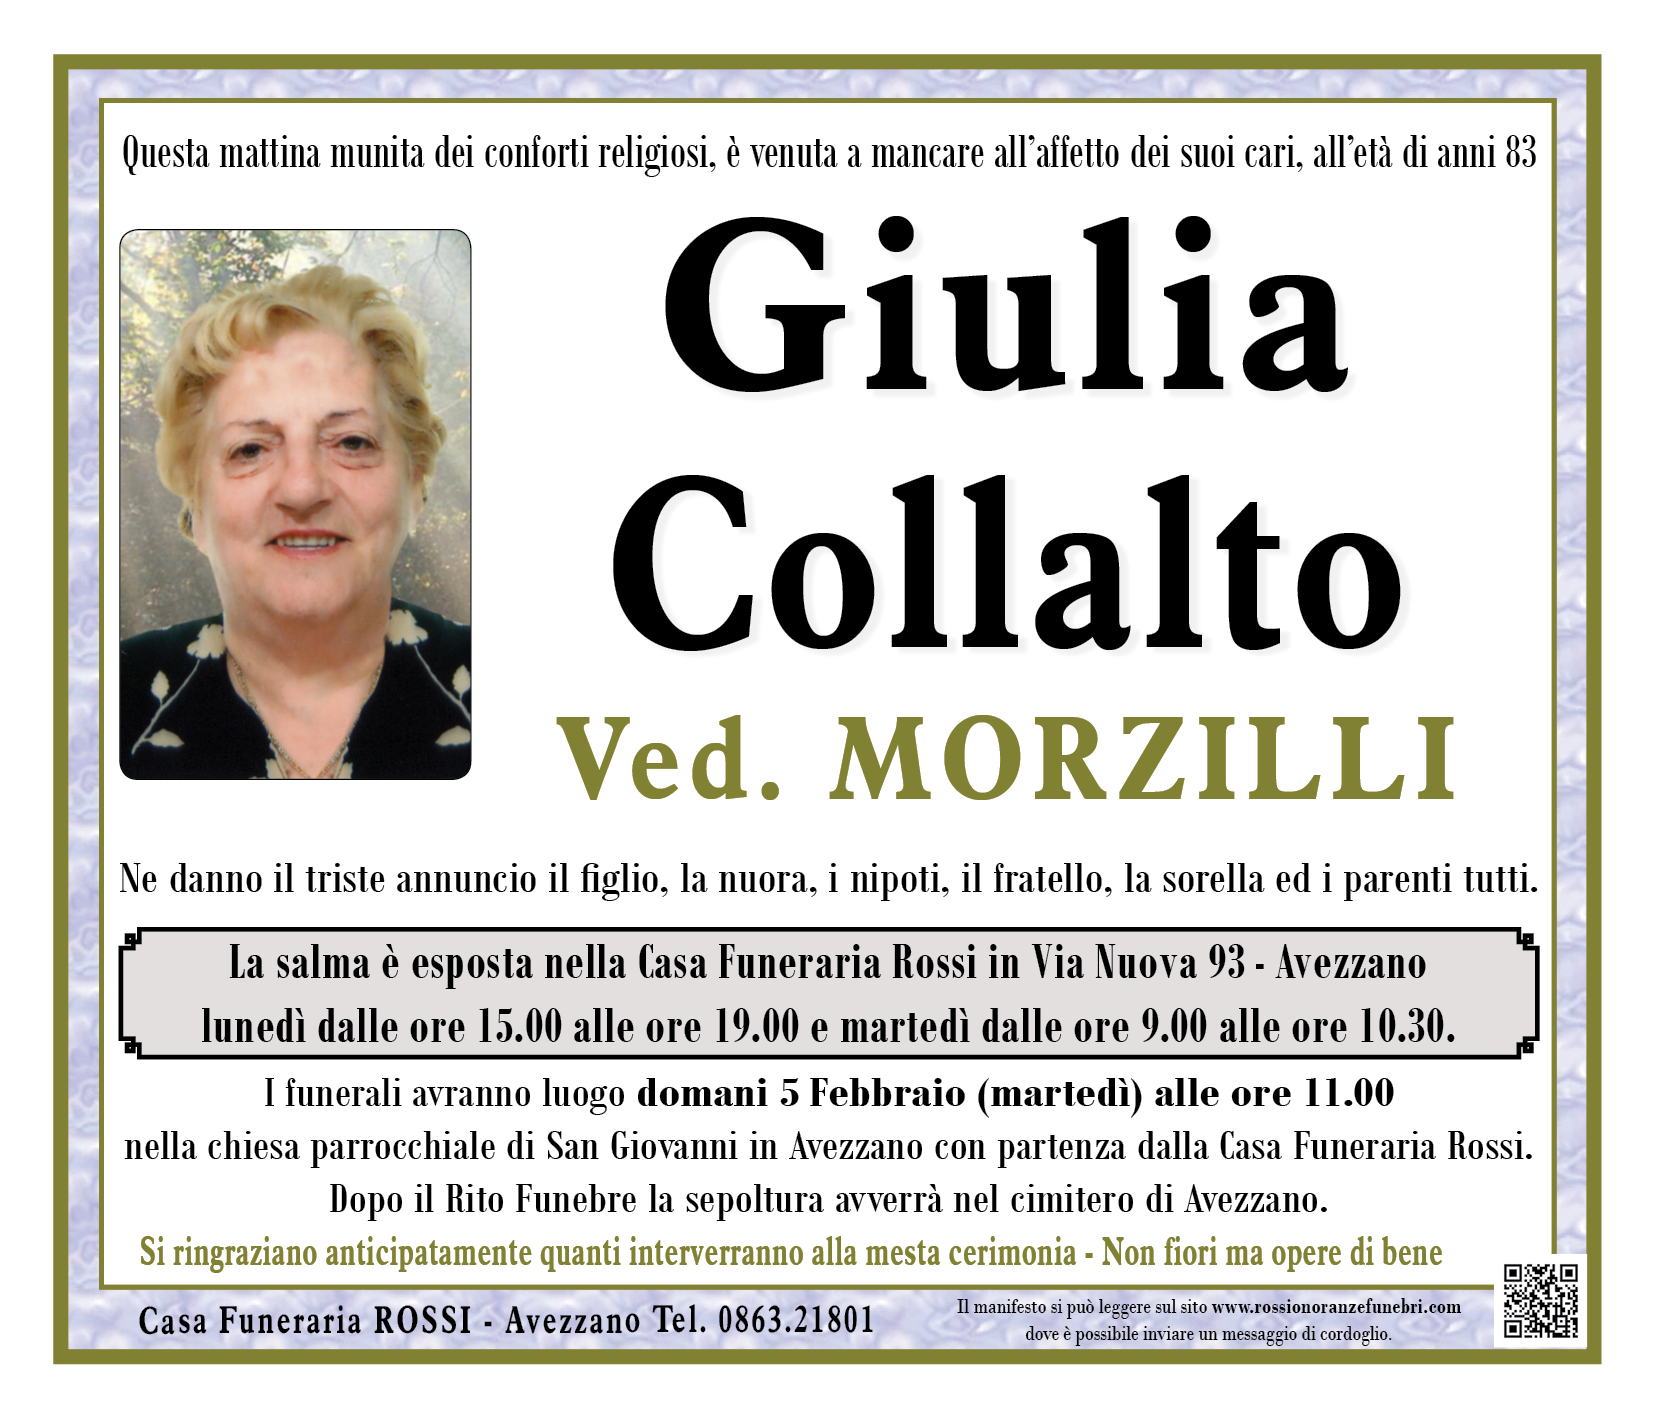 Giulia Collalto